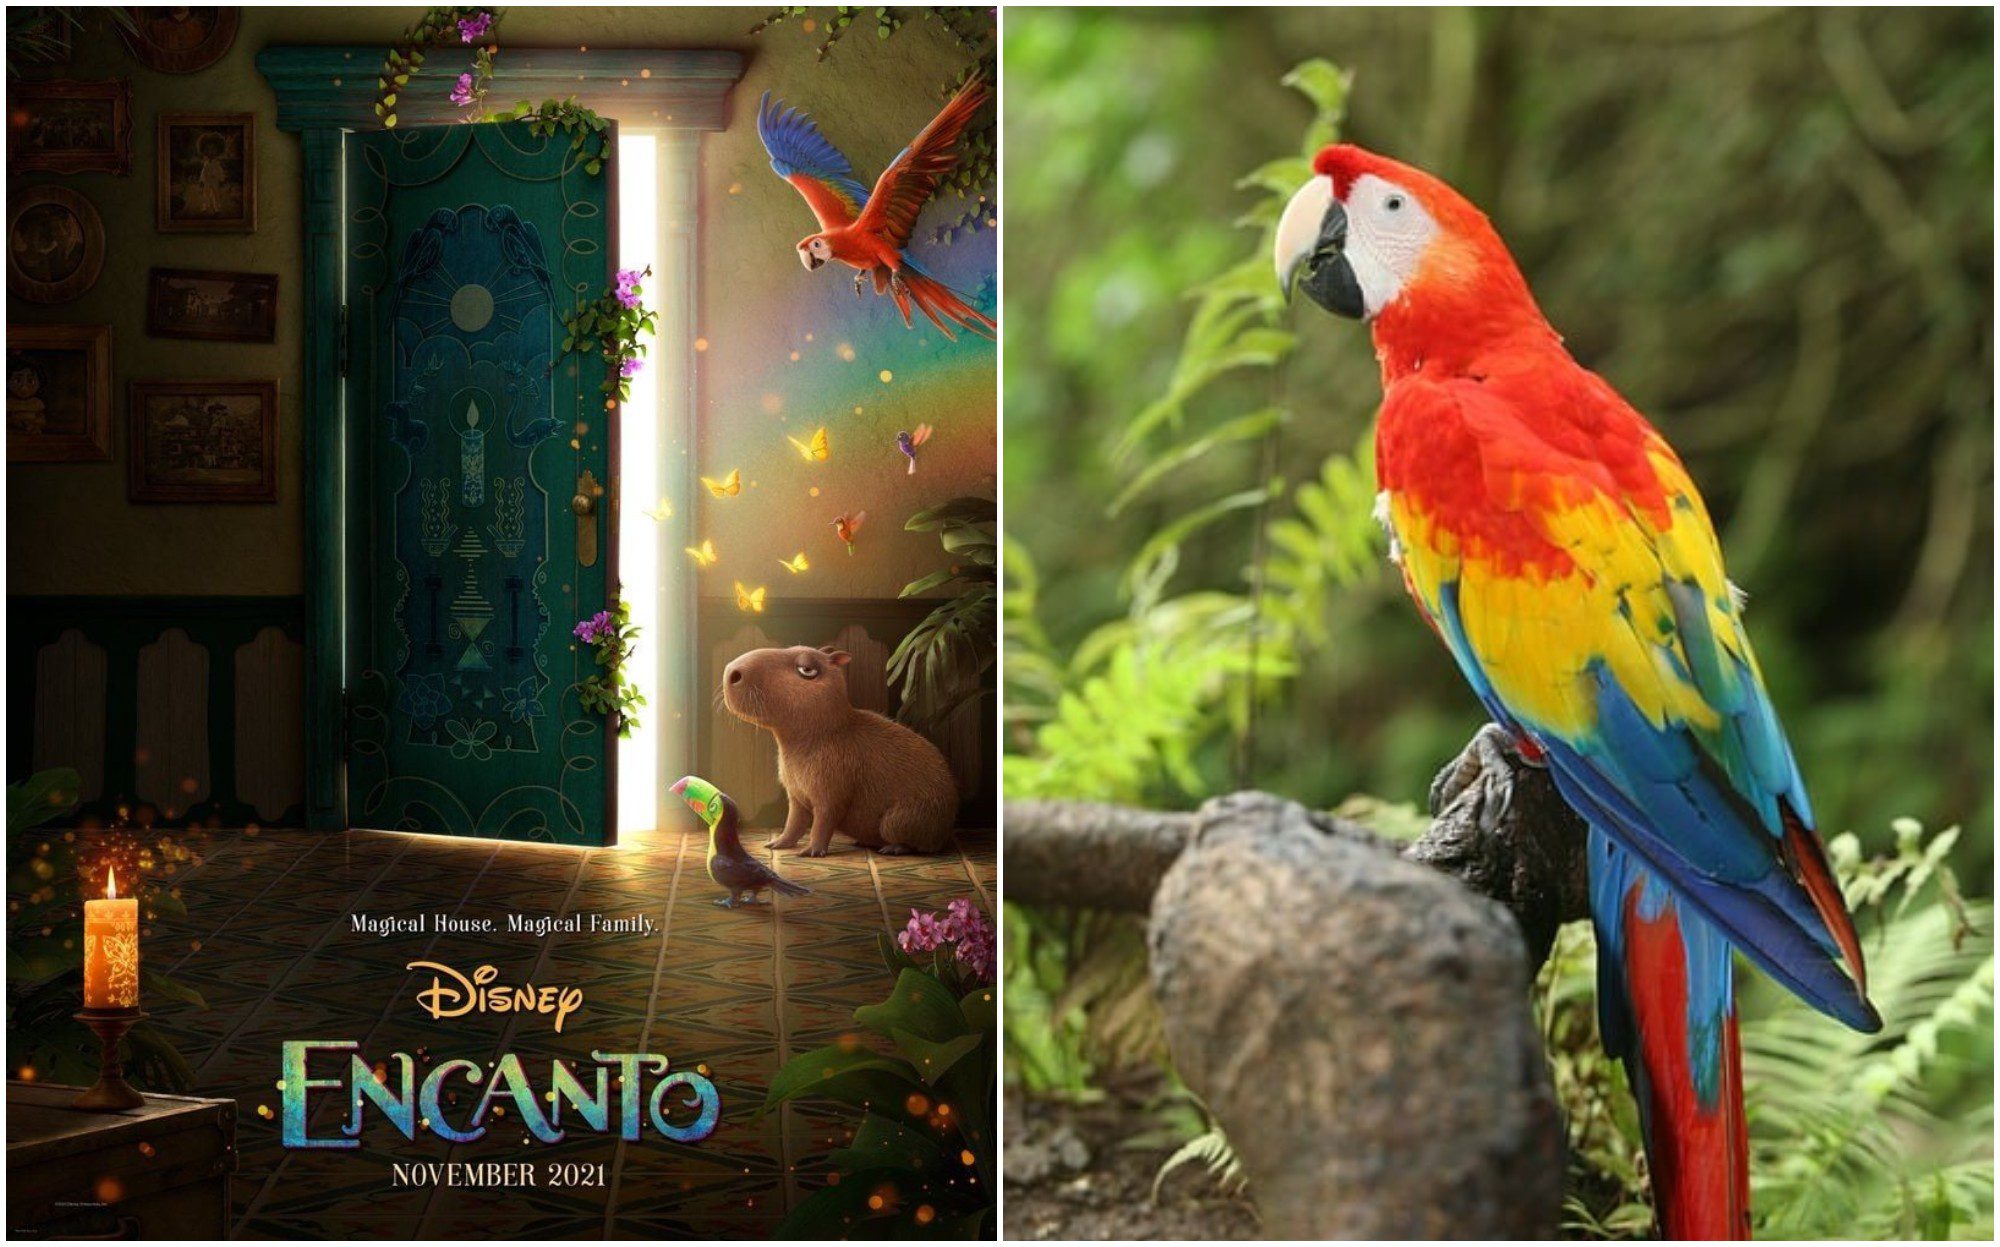 La nueva película de Disney «Encanto» destaca la guacamaya